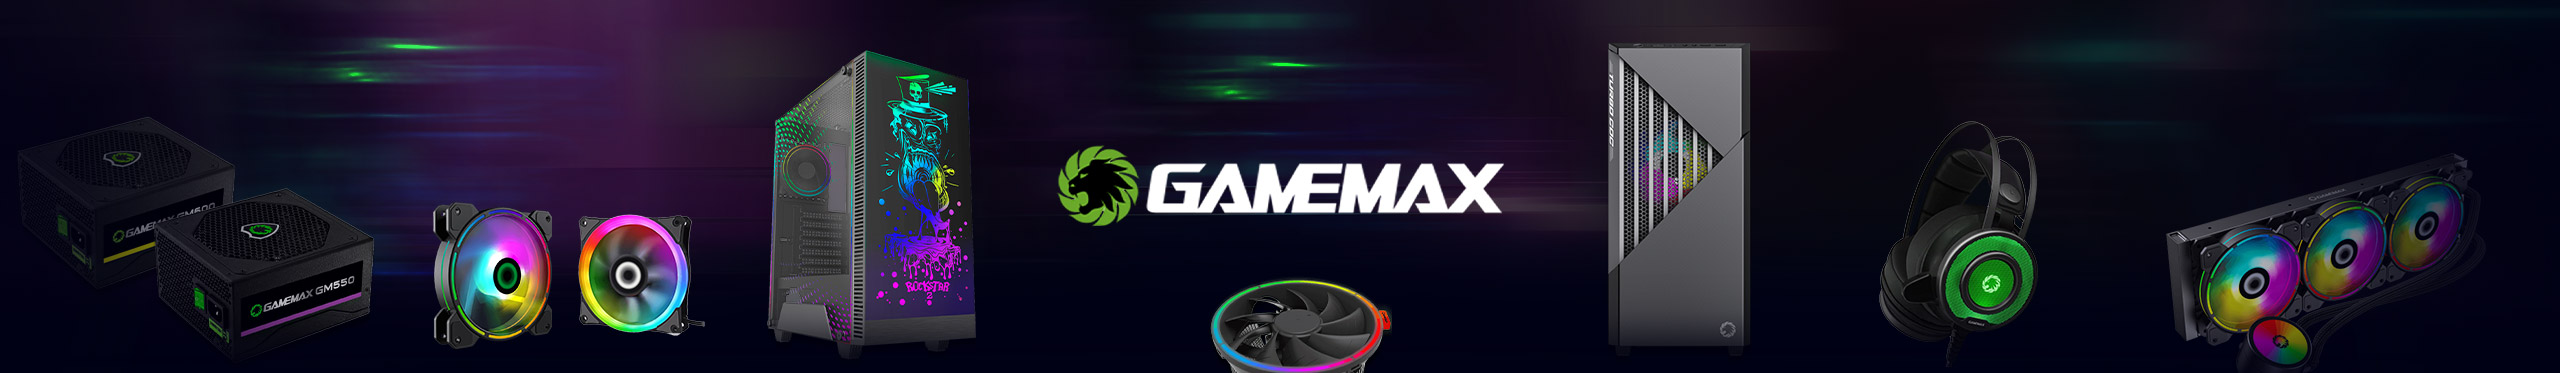 Toda partida é GG, quando se joga com um setup Gamemax.